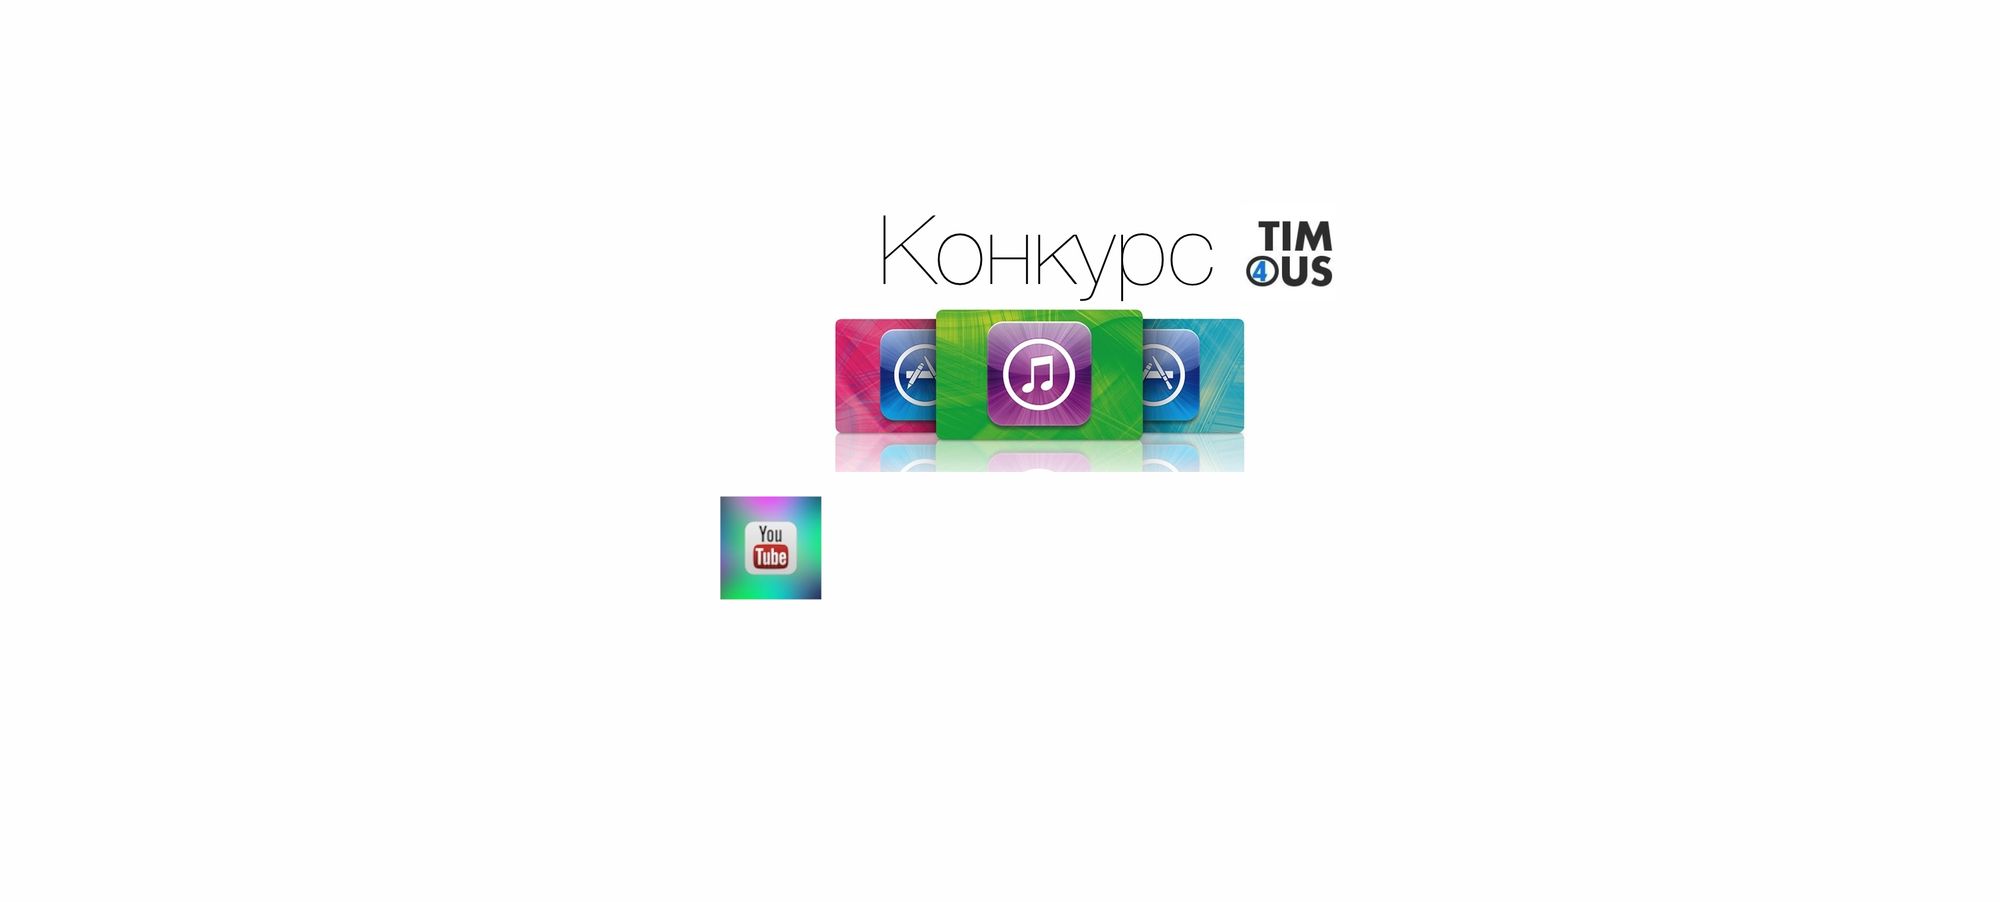 Конкурс на подарочную карту iTunes (1000 рублей) от t4s.tech и iDimaProduction